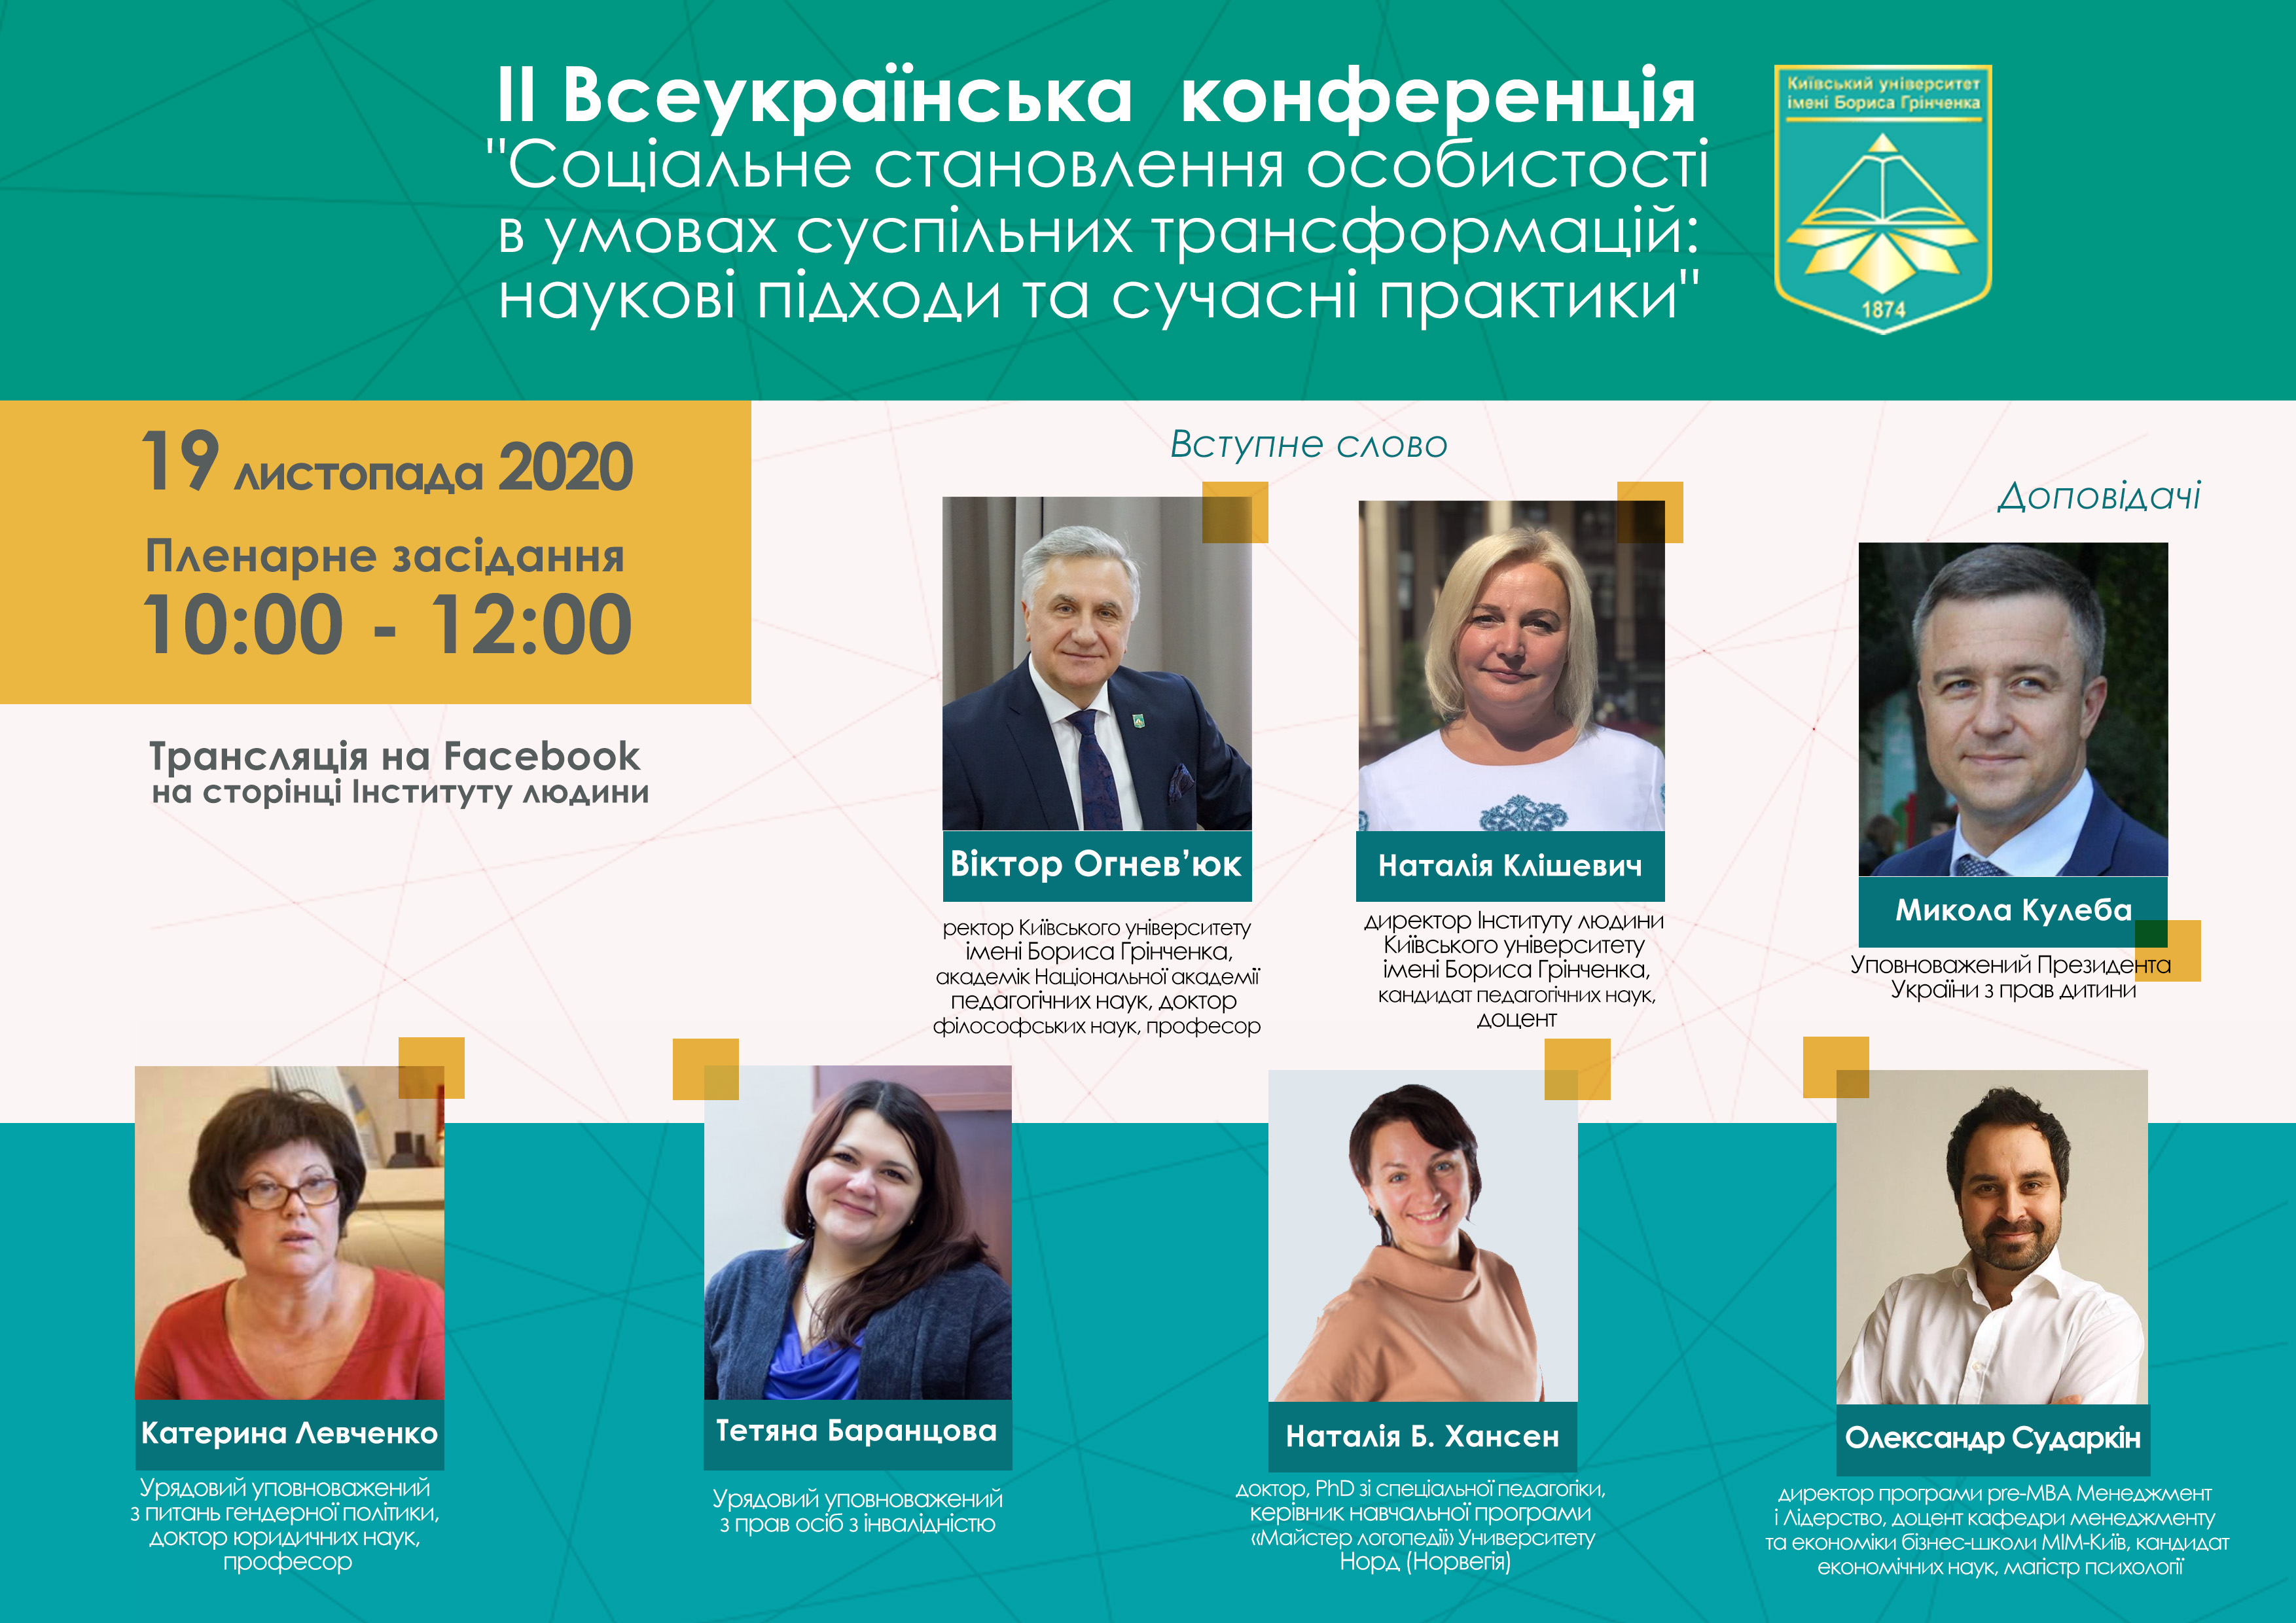 ІІ Всеукраїнська науково-практична онлайн-конференція «Соціальне становлення особистості в умовах суспільних трансформацій: наукові підходи та сучасні практики»